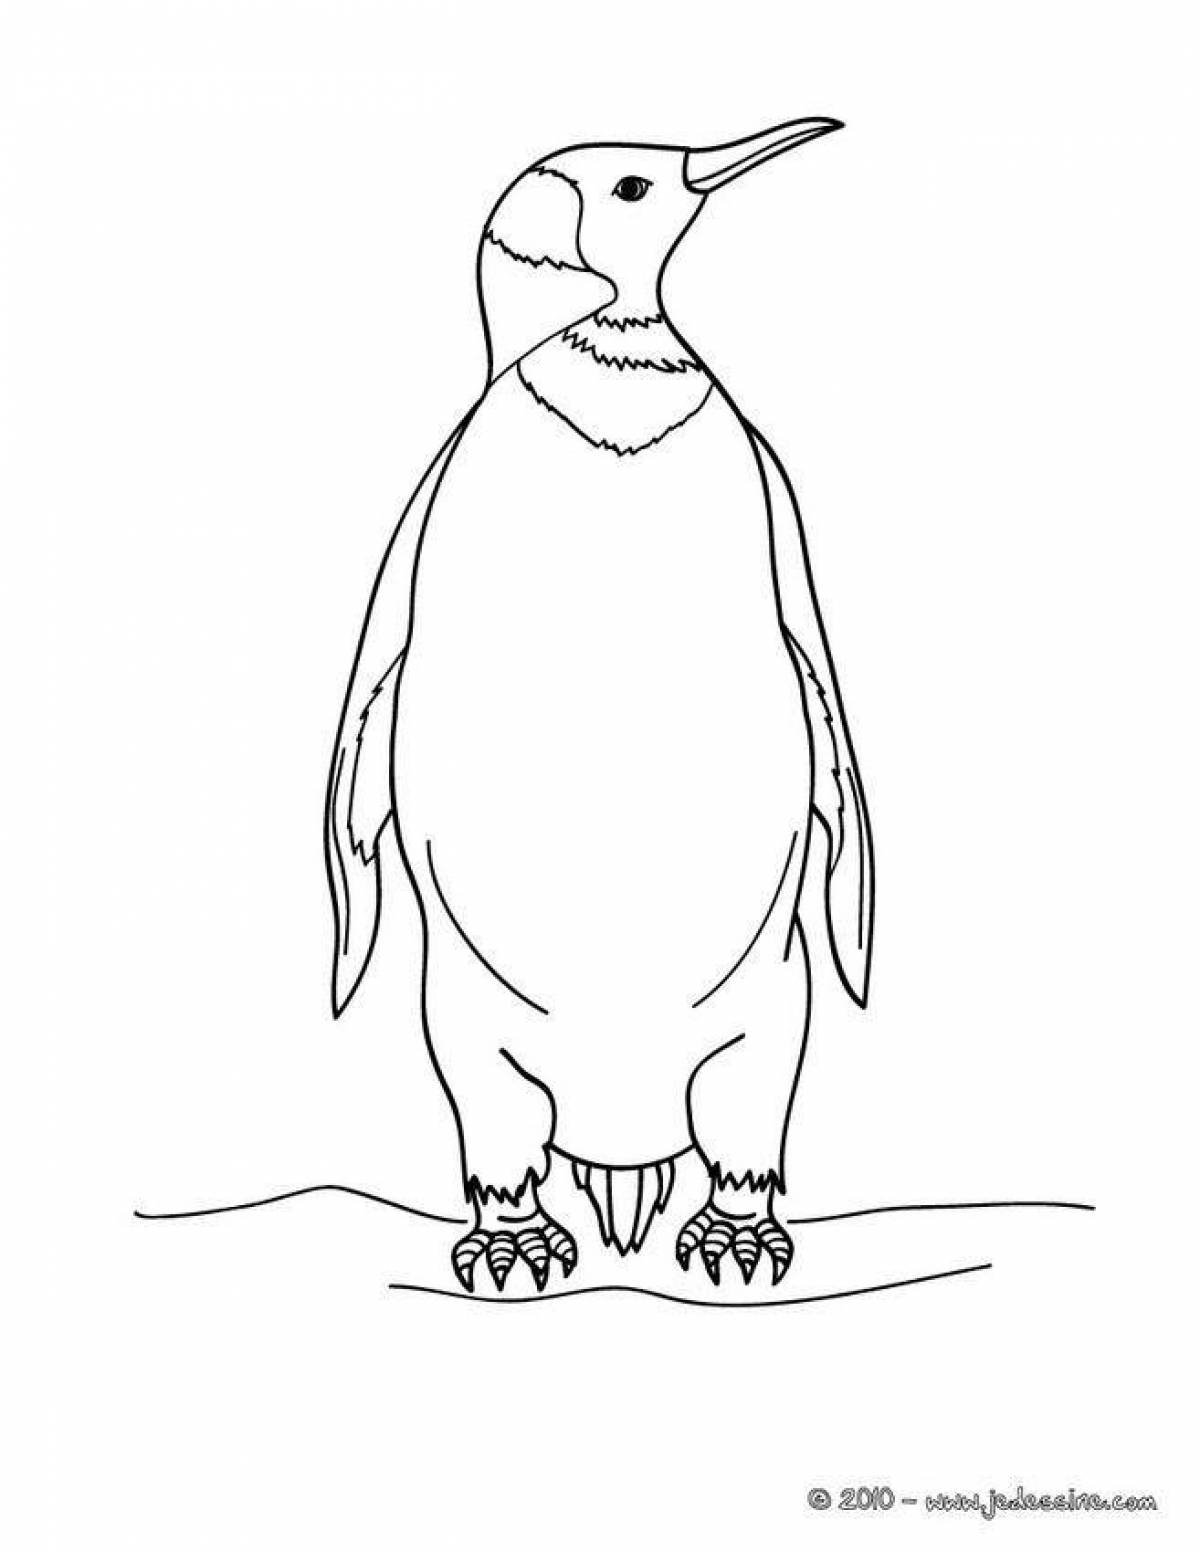 Coloring page joyful emperor penguin